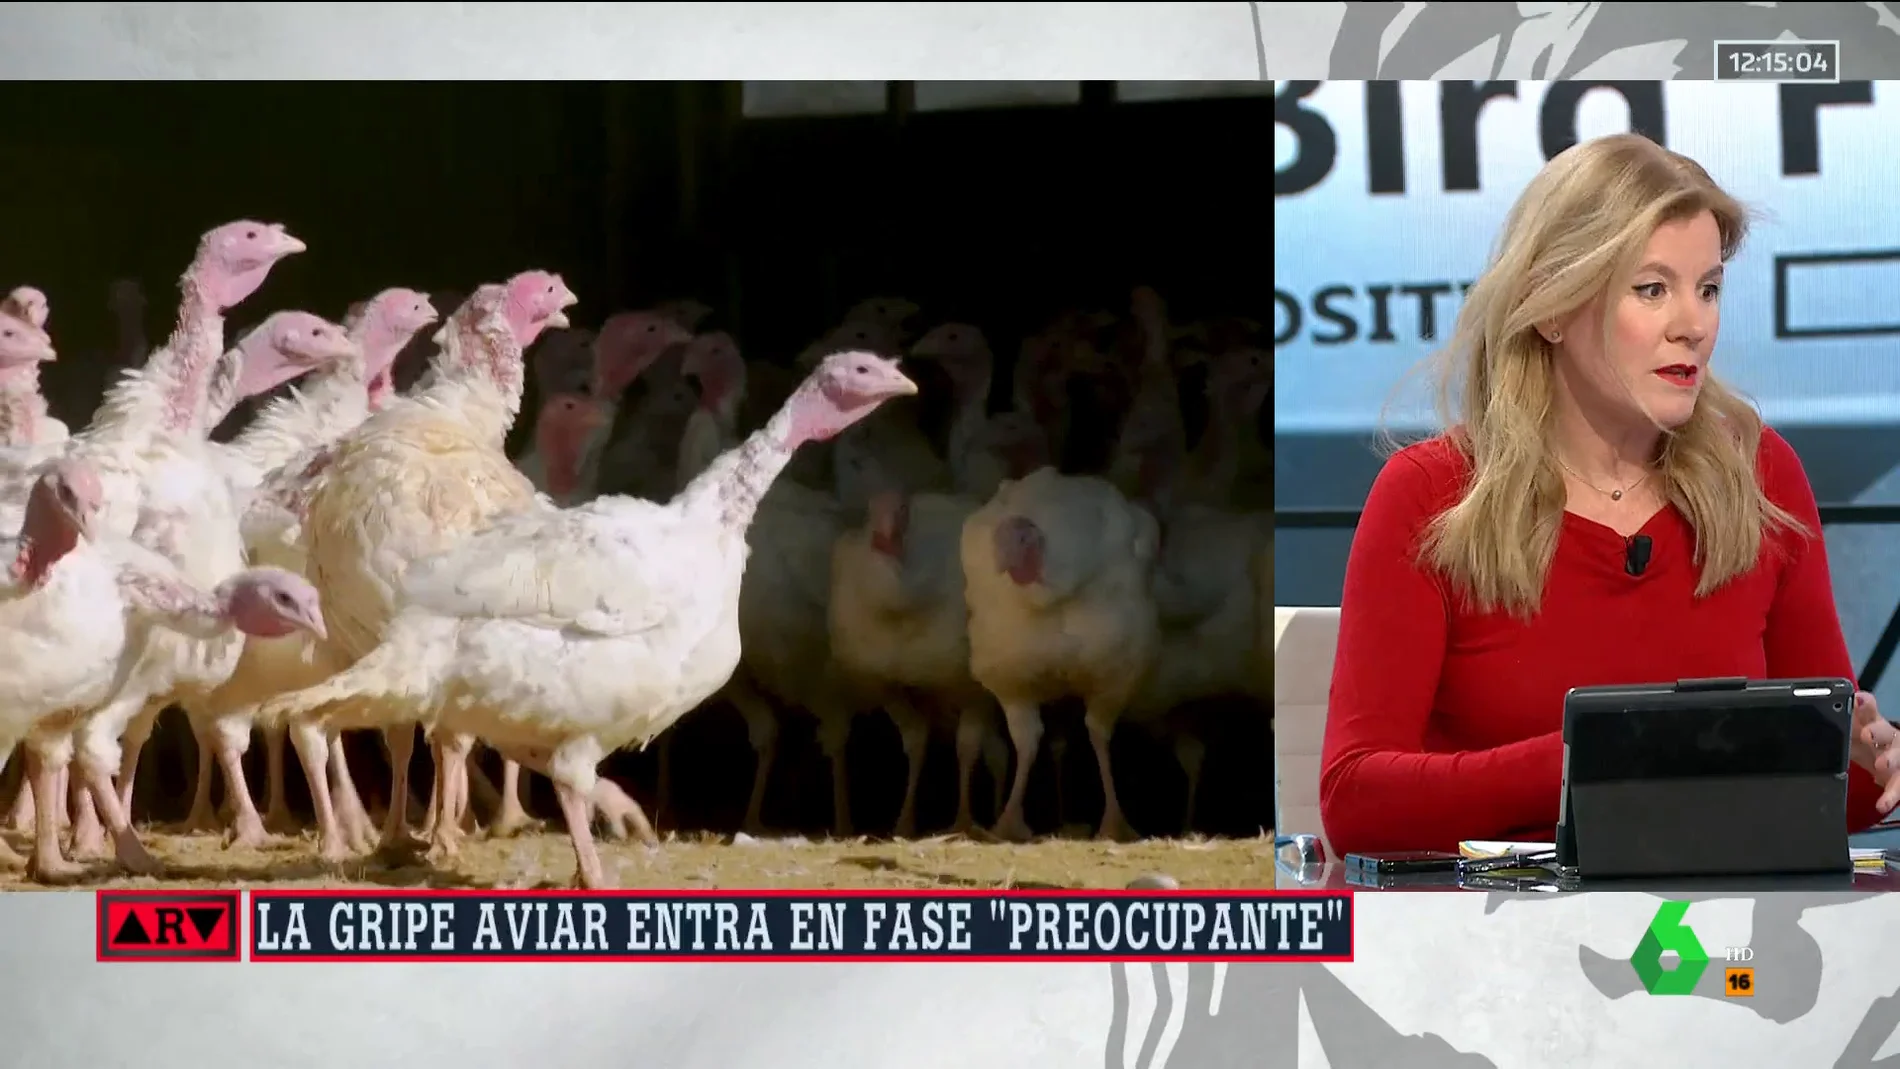 "Tenemos un problema mundial muy serio": Graziella Almendral explica cuál es la "preocupación" con la gripe aviar